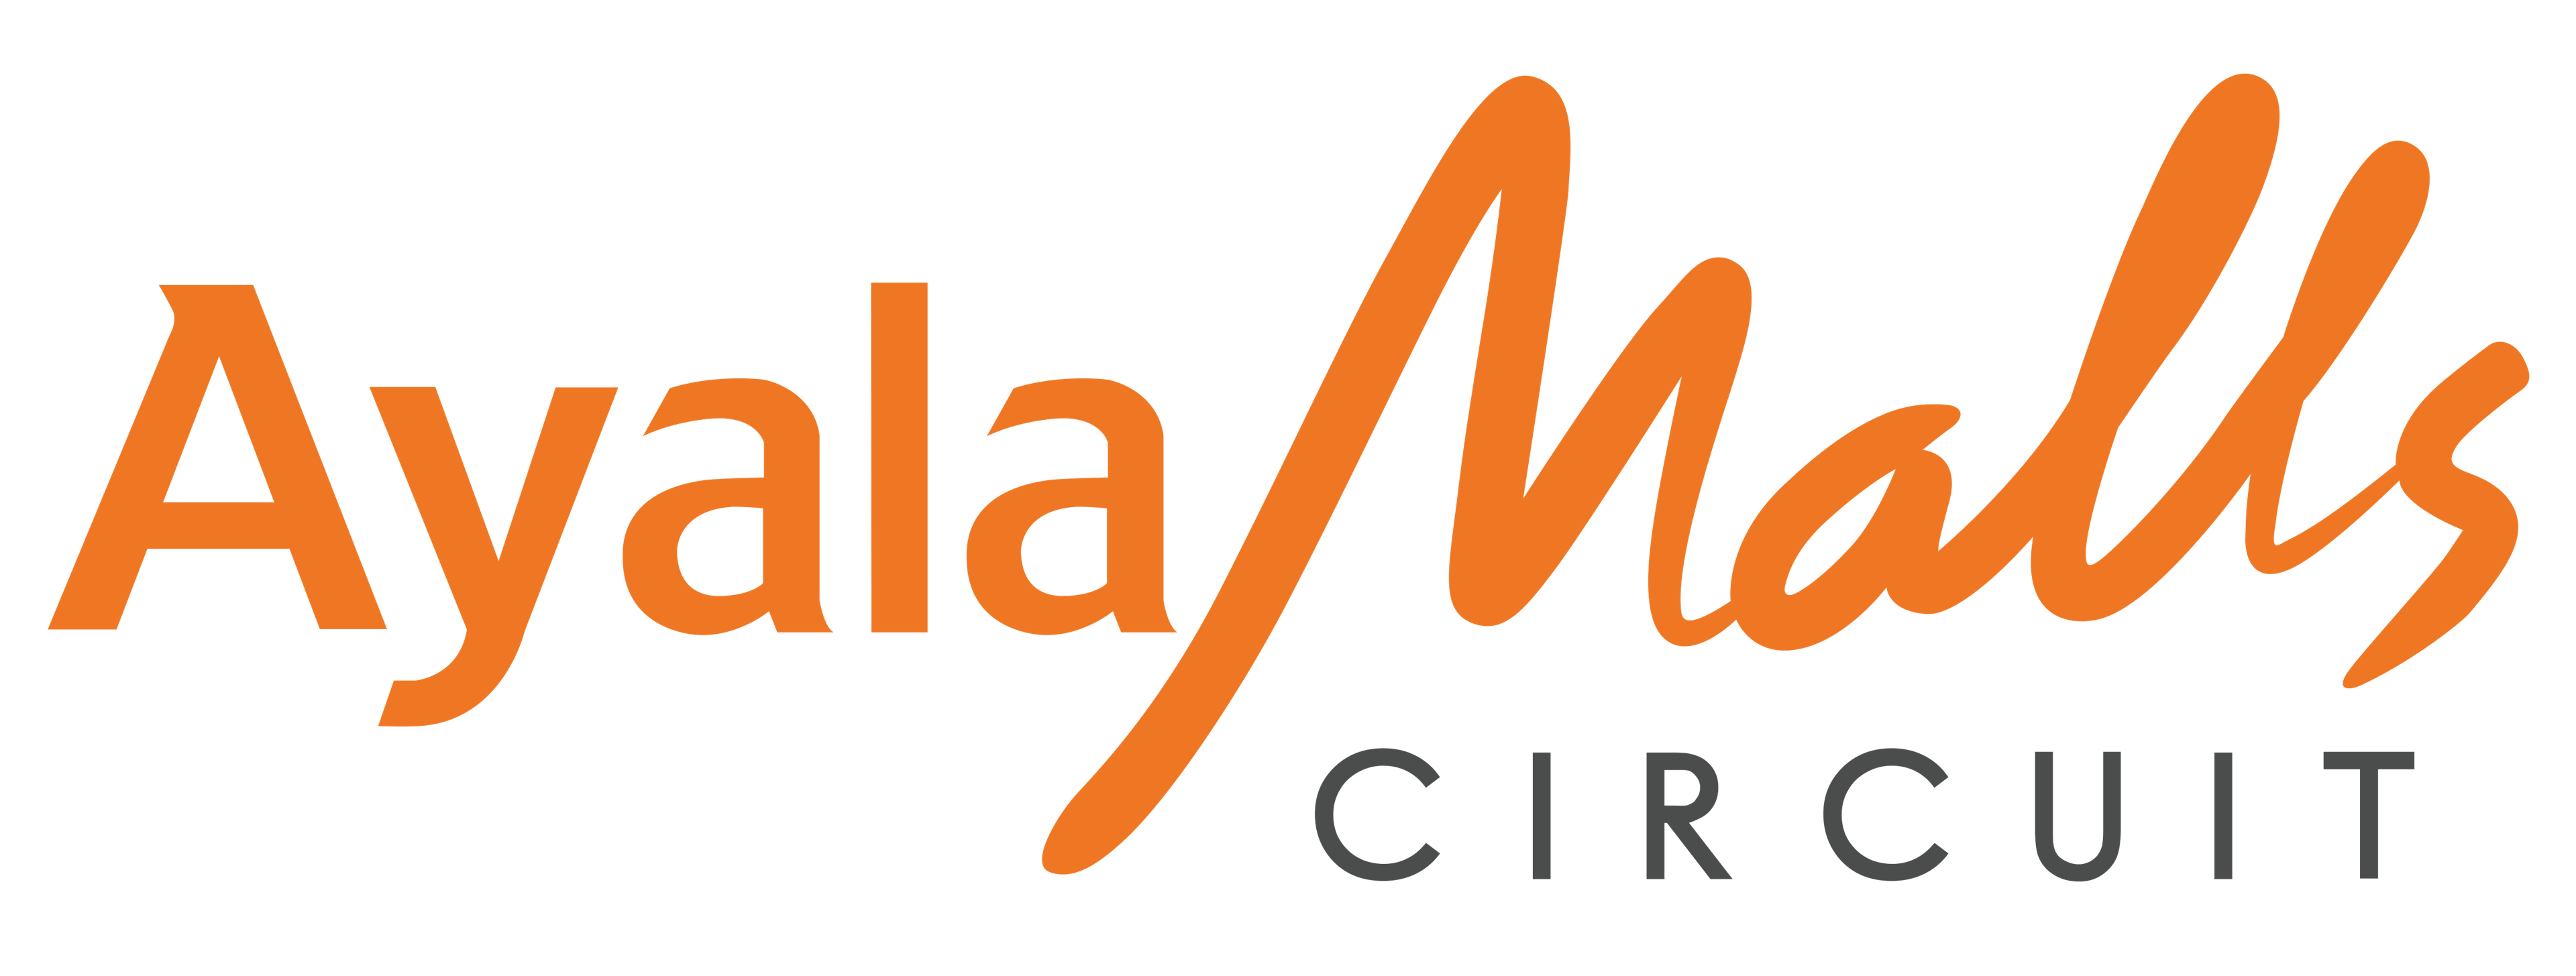 Ayala Malls Circuit Logo